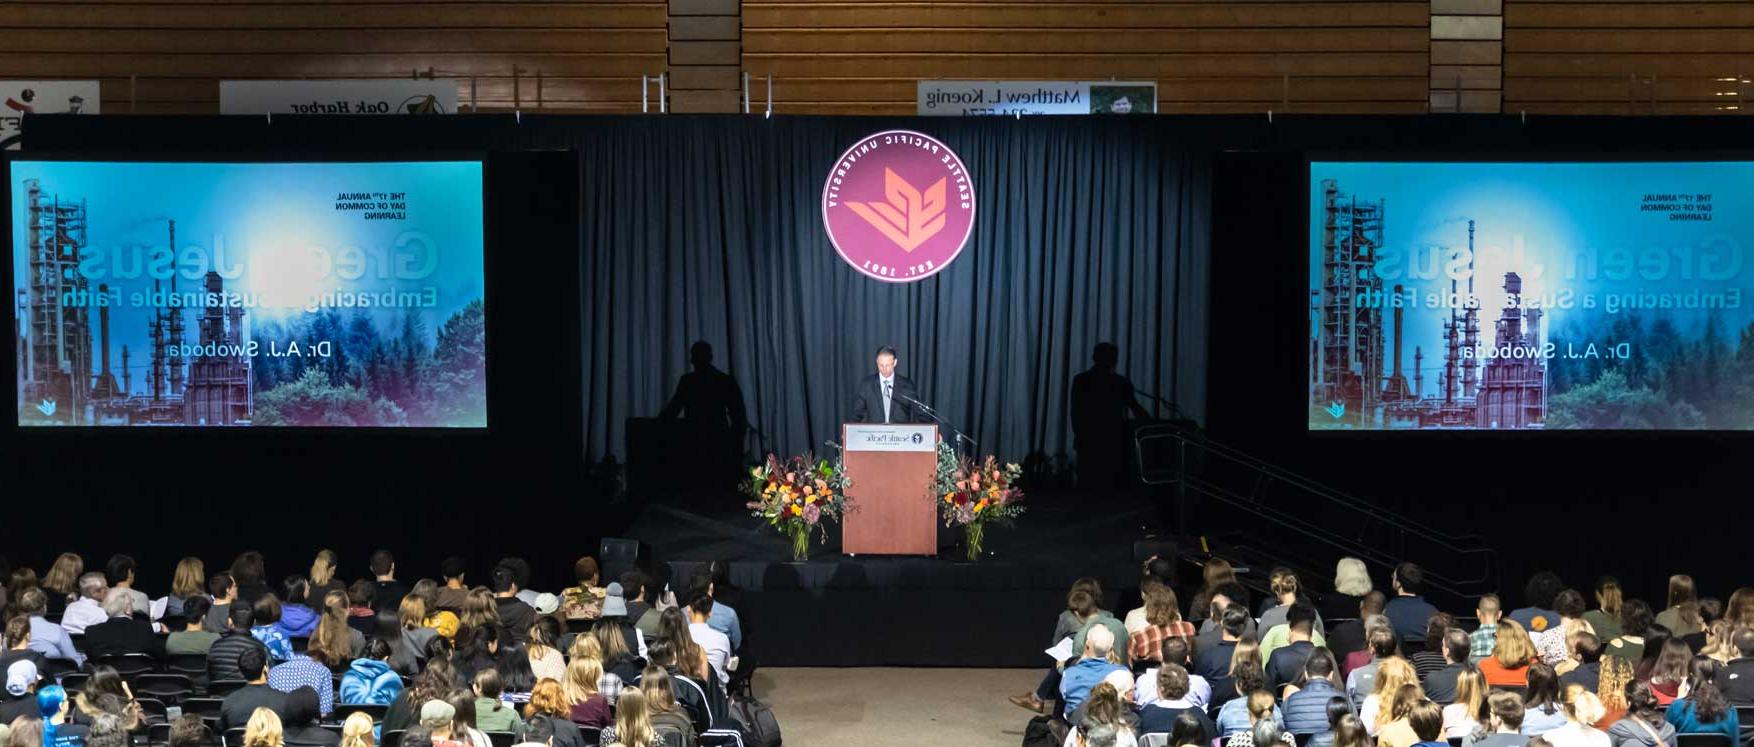 8 | 西雅图 Pacific University bodegapuenteajuda.com | 9作者A.J. Swoboda spoke about creation care at the Day of Common Learning.